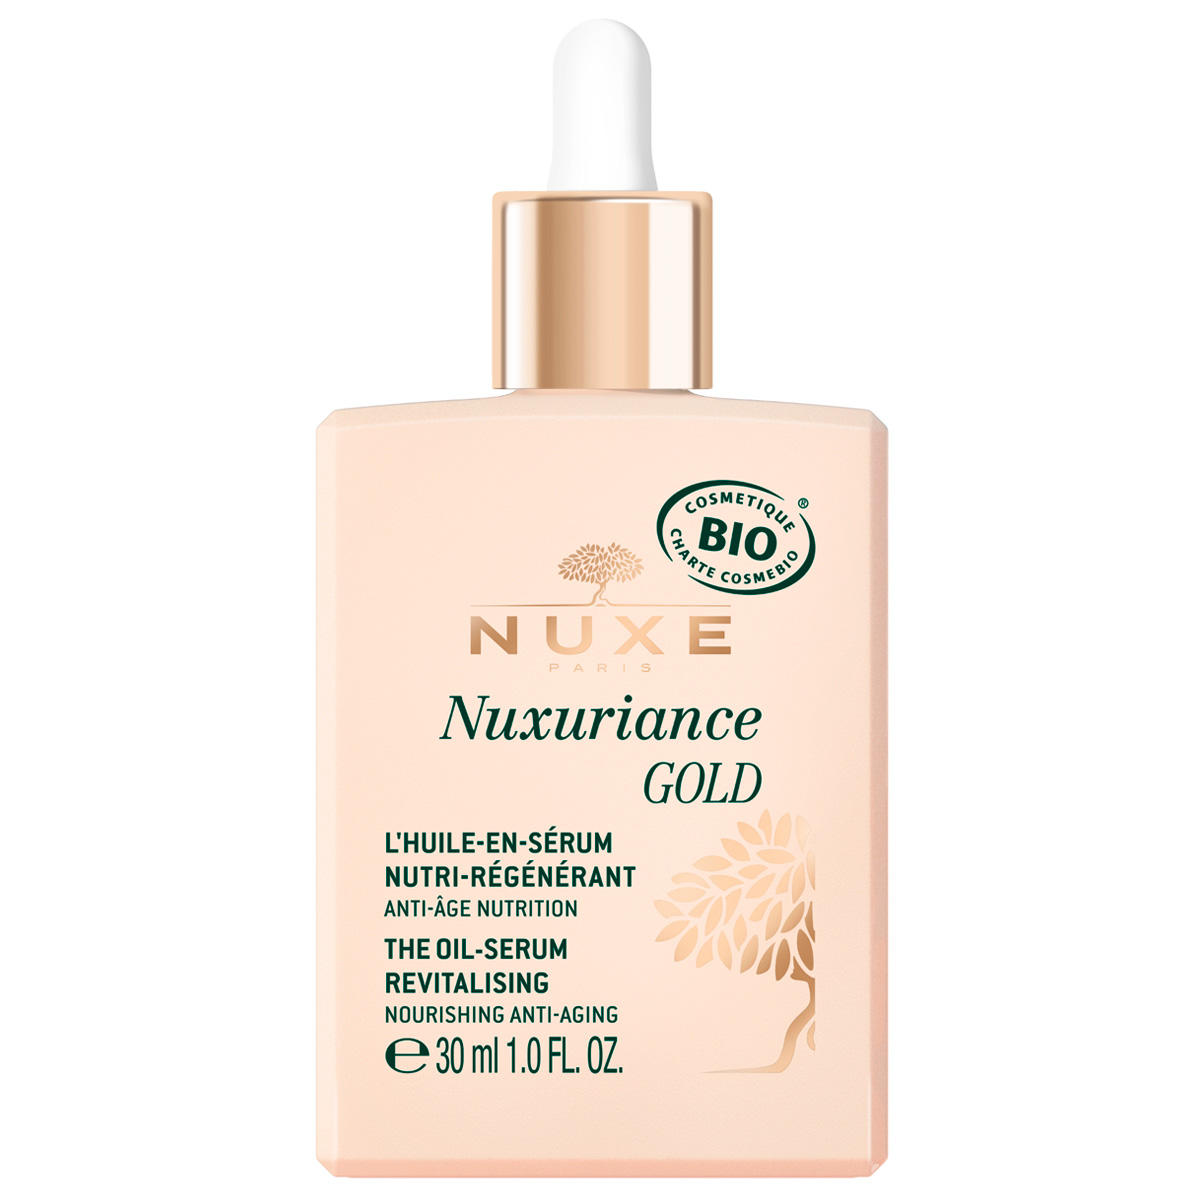 NUXE Nuxuriance L'huile-en-sérum nutri-régénérant 30 ml - 1